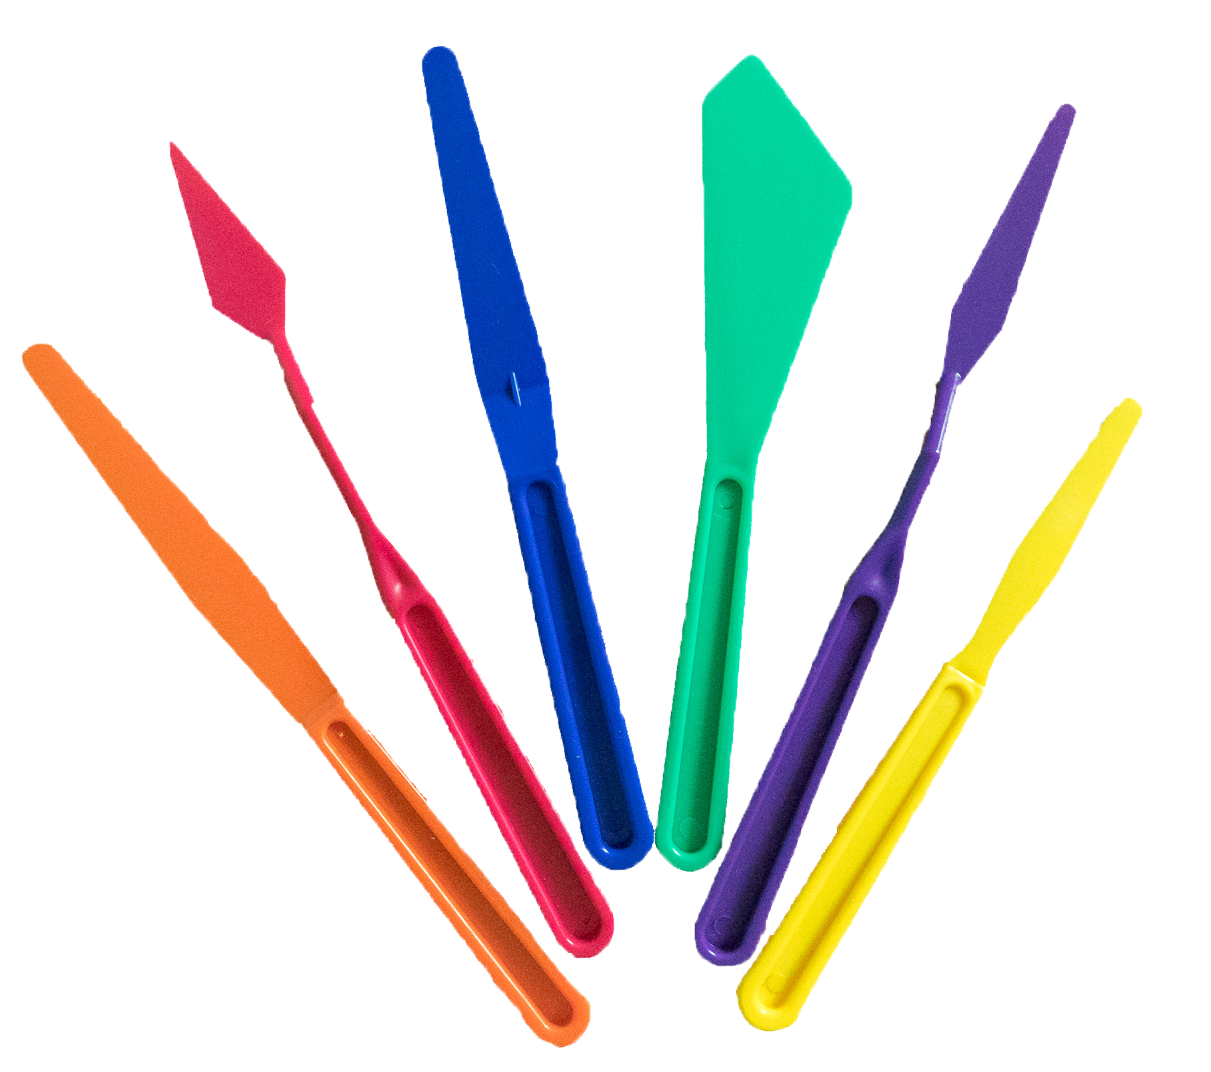 Umelecké farebné plastové špachtle Royal & Langnickal - set 6 ks